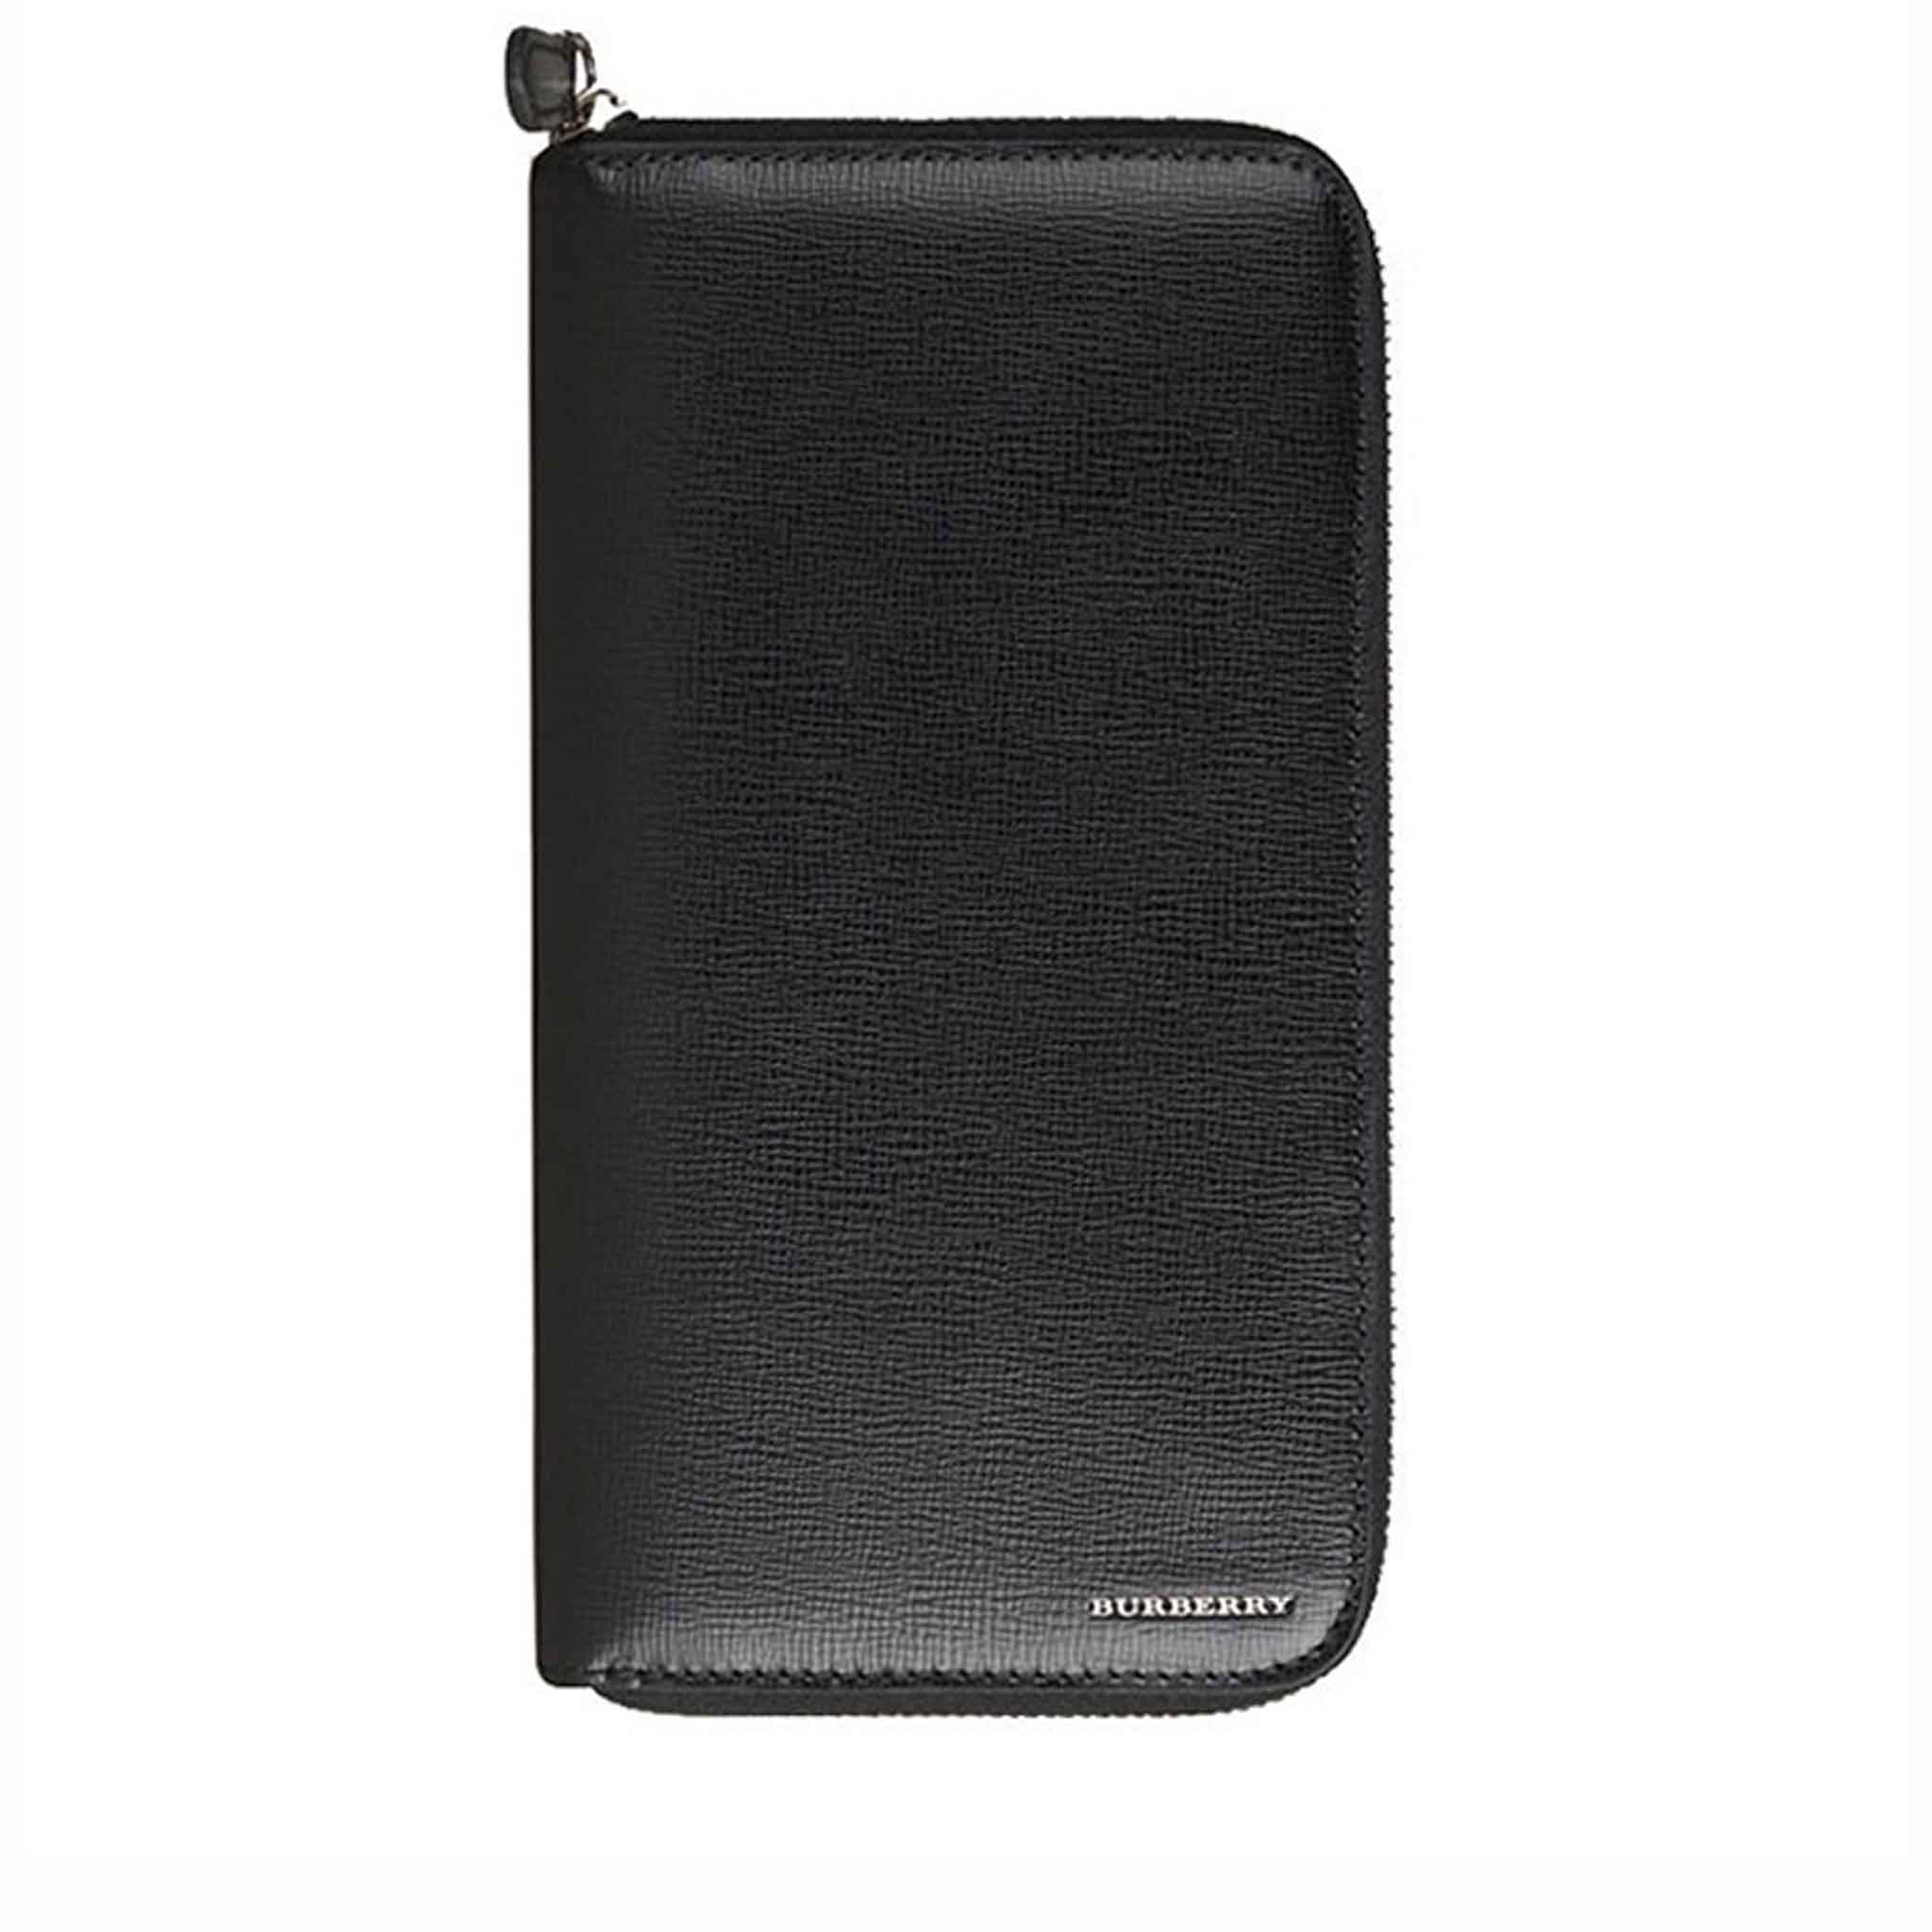 Ví dài Burberry Long Zipper Wallet da taiga màu đen siêu cấp like auth 99%  - TUNG LUXURY™